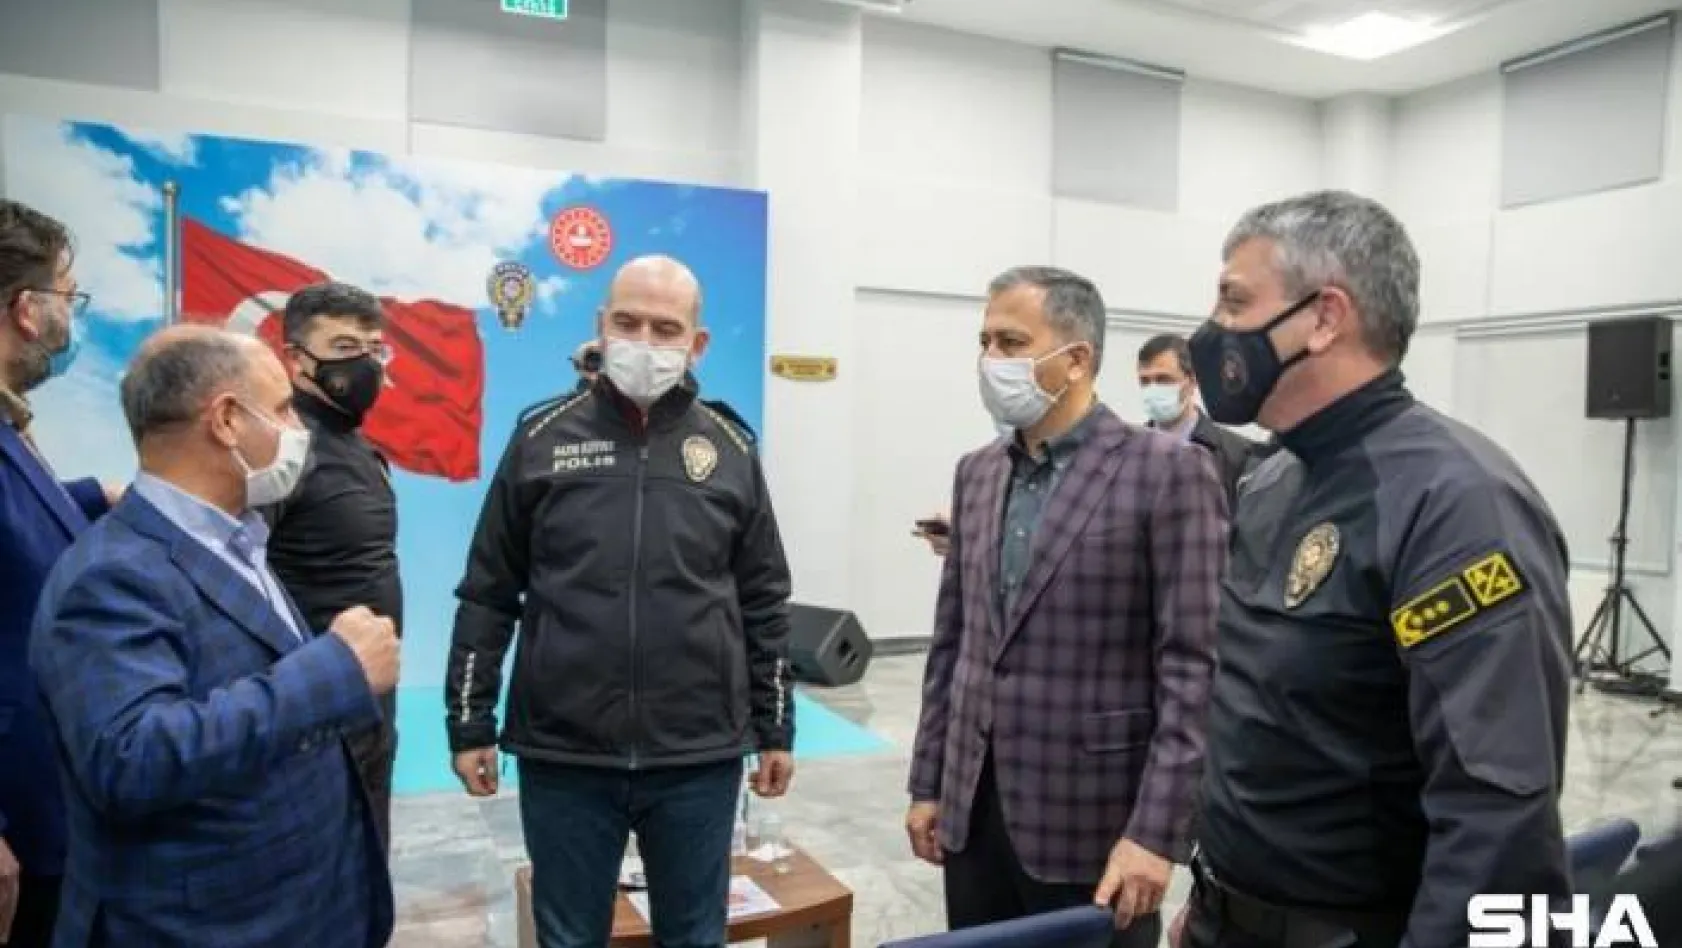 İçişleri Bakanı Soylu, İstanbul Takviye Kuvvet Müdürlüğü'nü ziyaret etti